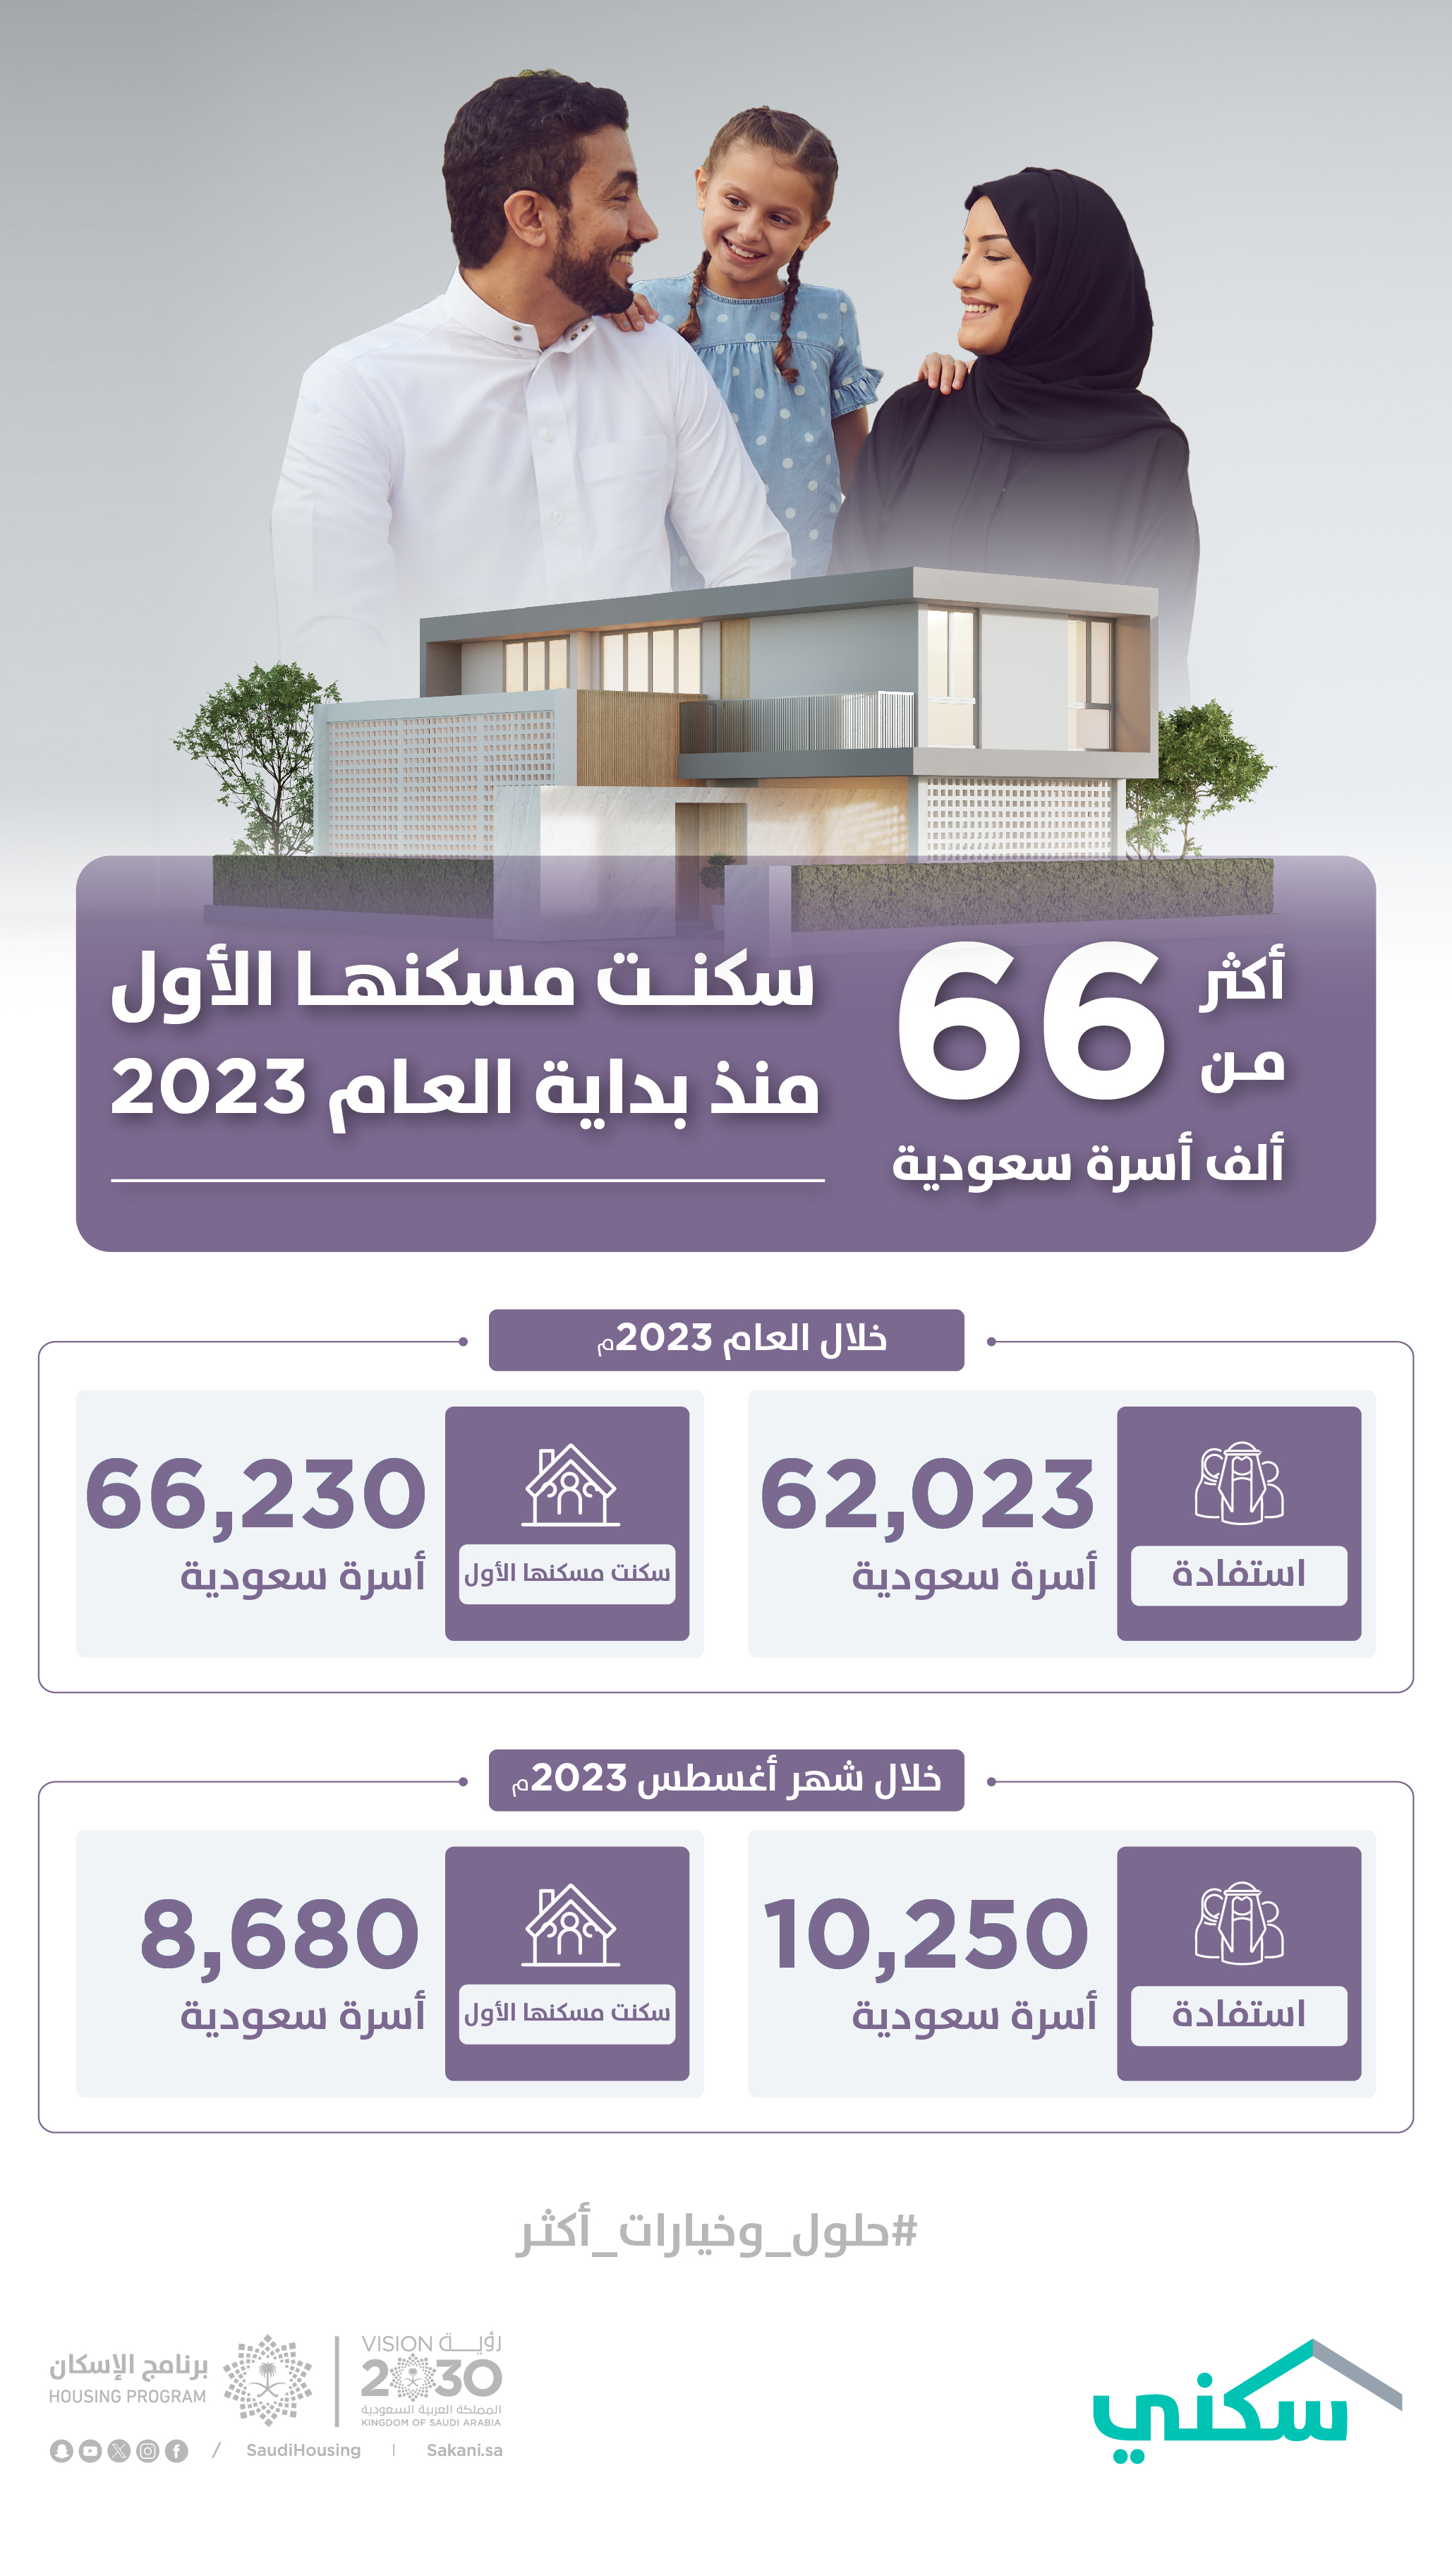 "سكني" يعلن استفادة أكثر من 10 آلاف أسرة سعودية خلال أغسطس الماضي.. بزيادة تتجاوز 23% مقارنة بشهر يوليو 2023